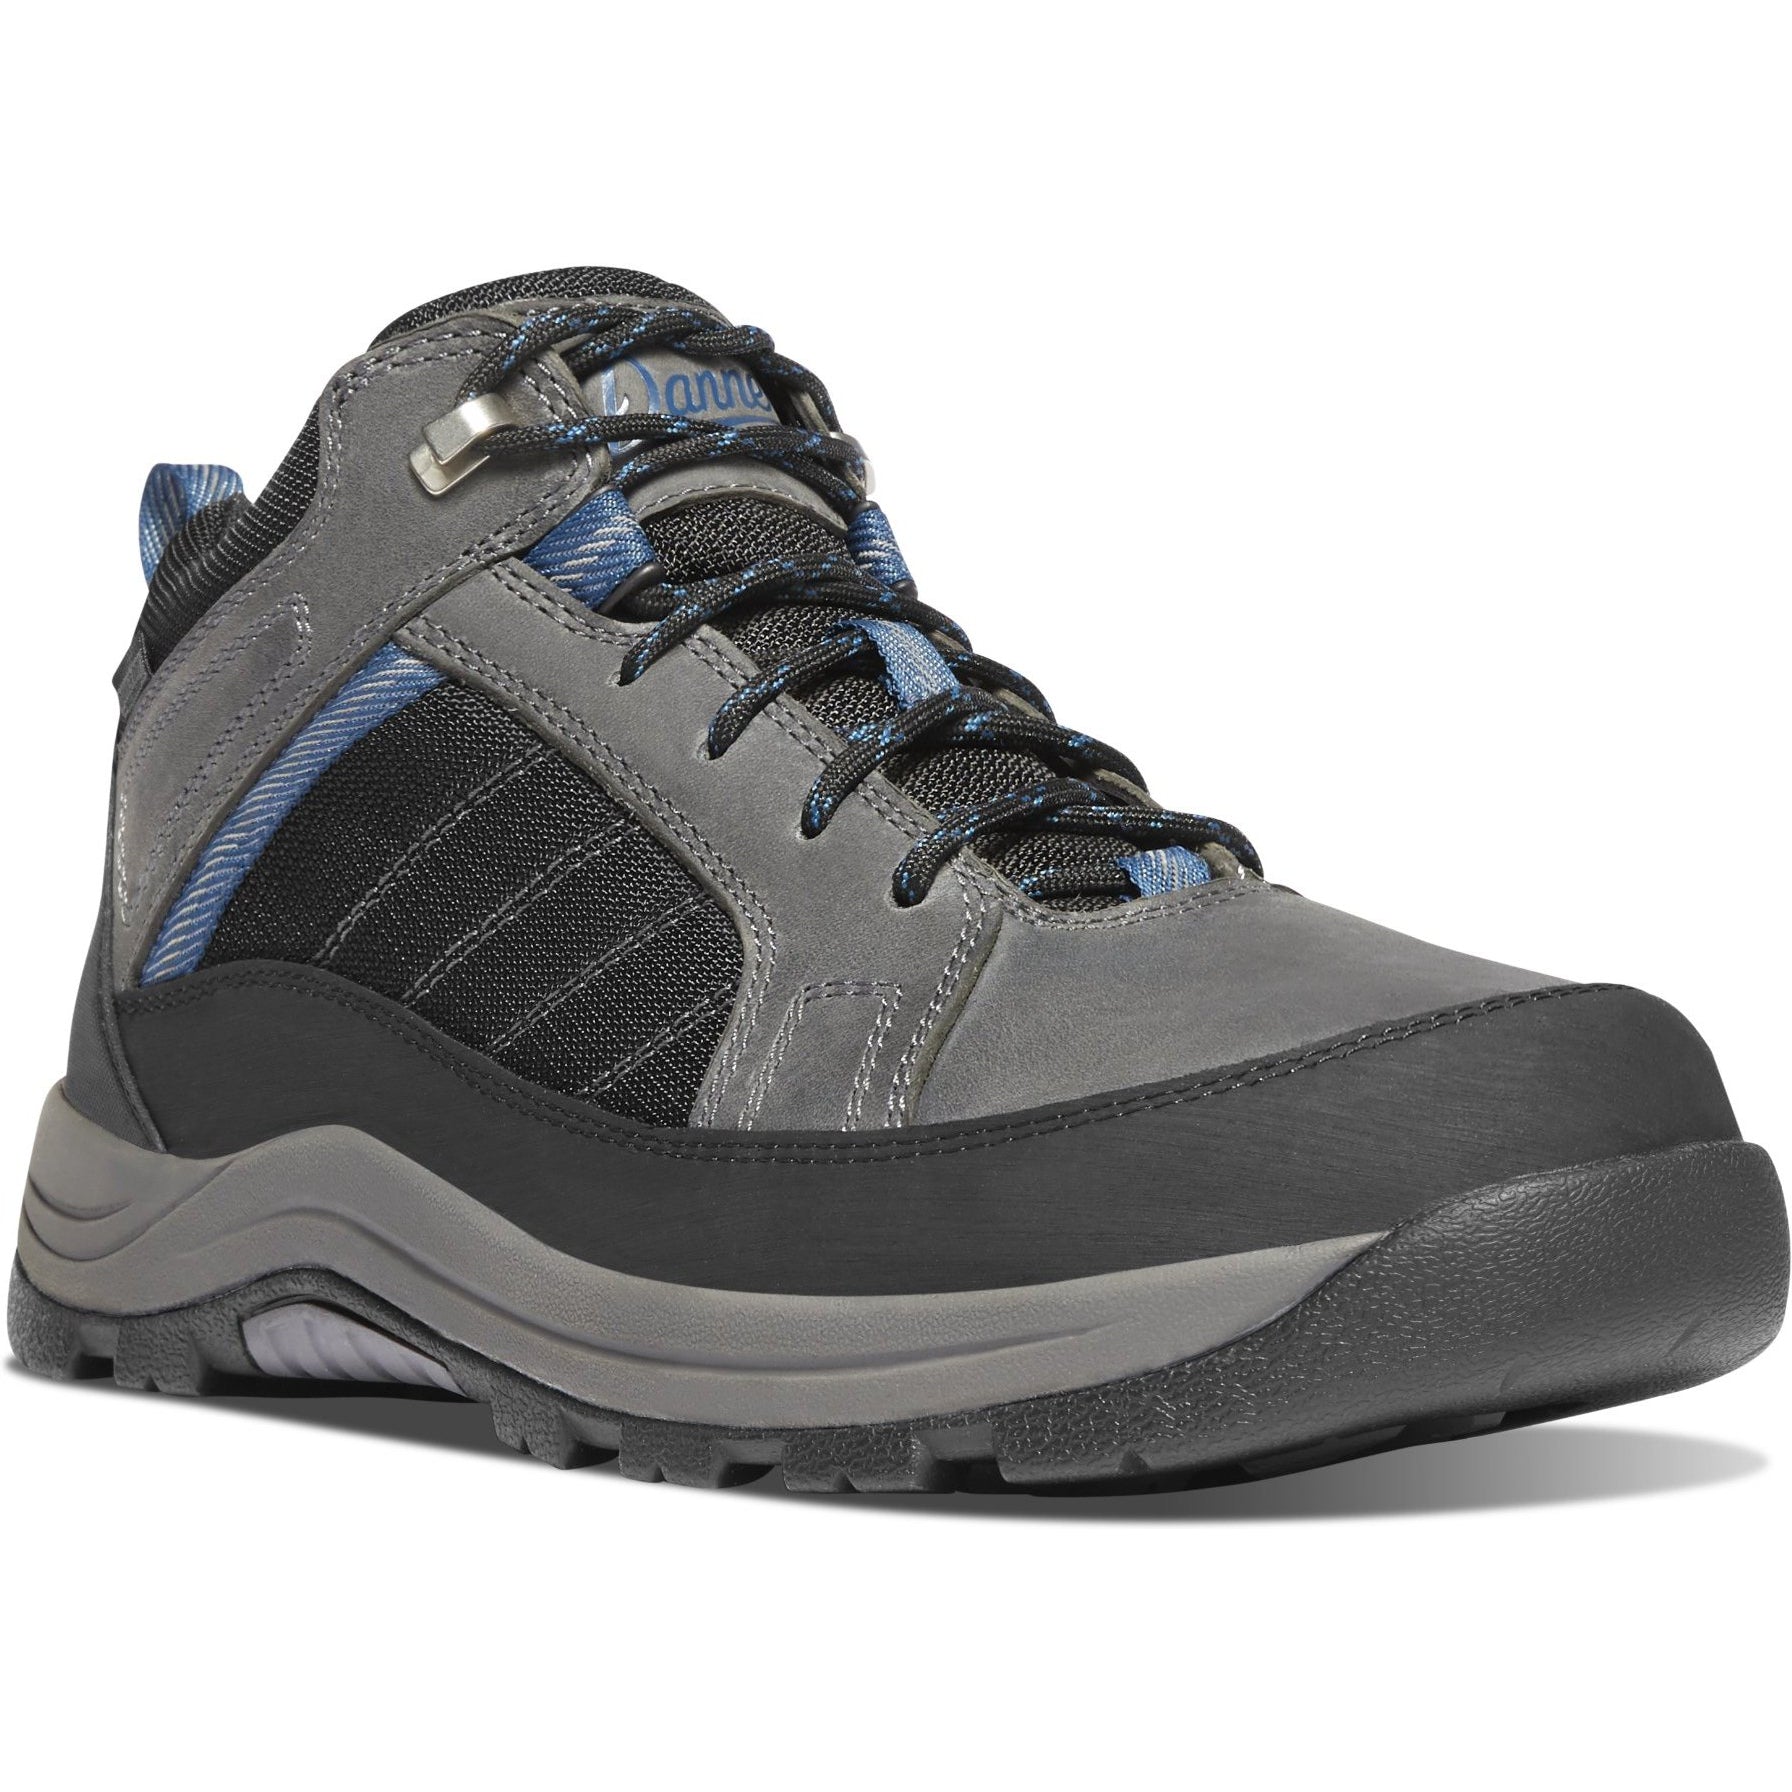 Danner Men's Riverside 4.5" Steel Toe WP Hiking Work Boot- Gray- 15342 7 / Medium / Gray/Blue - Overlook Boots